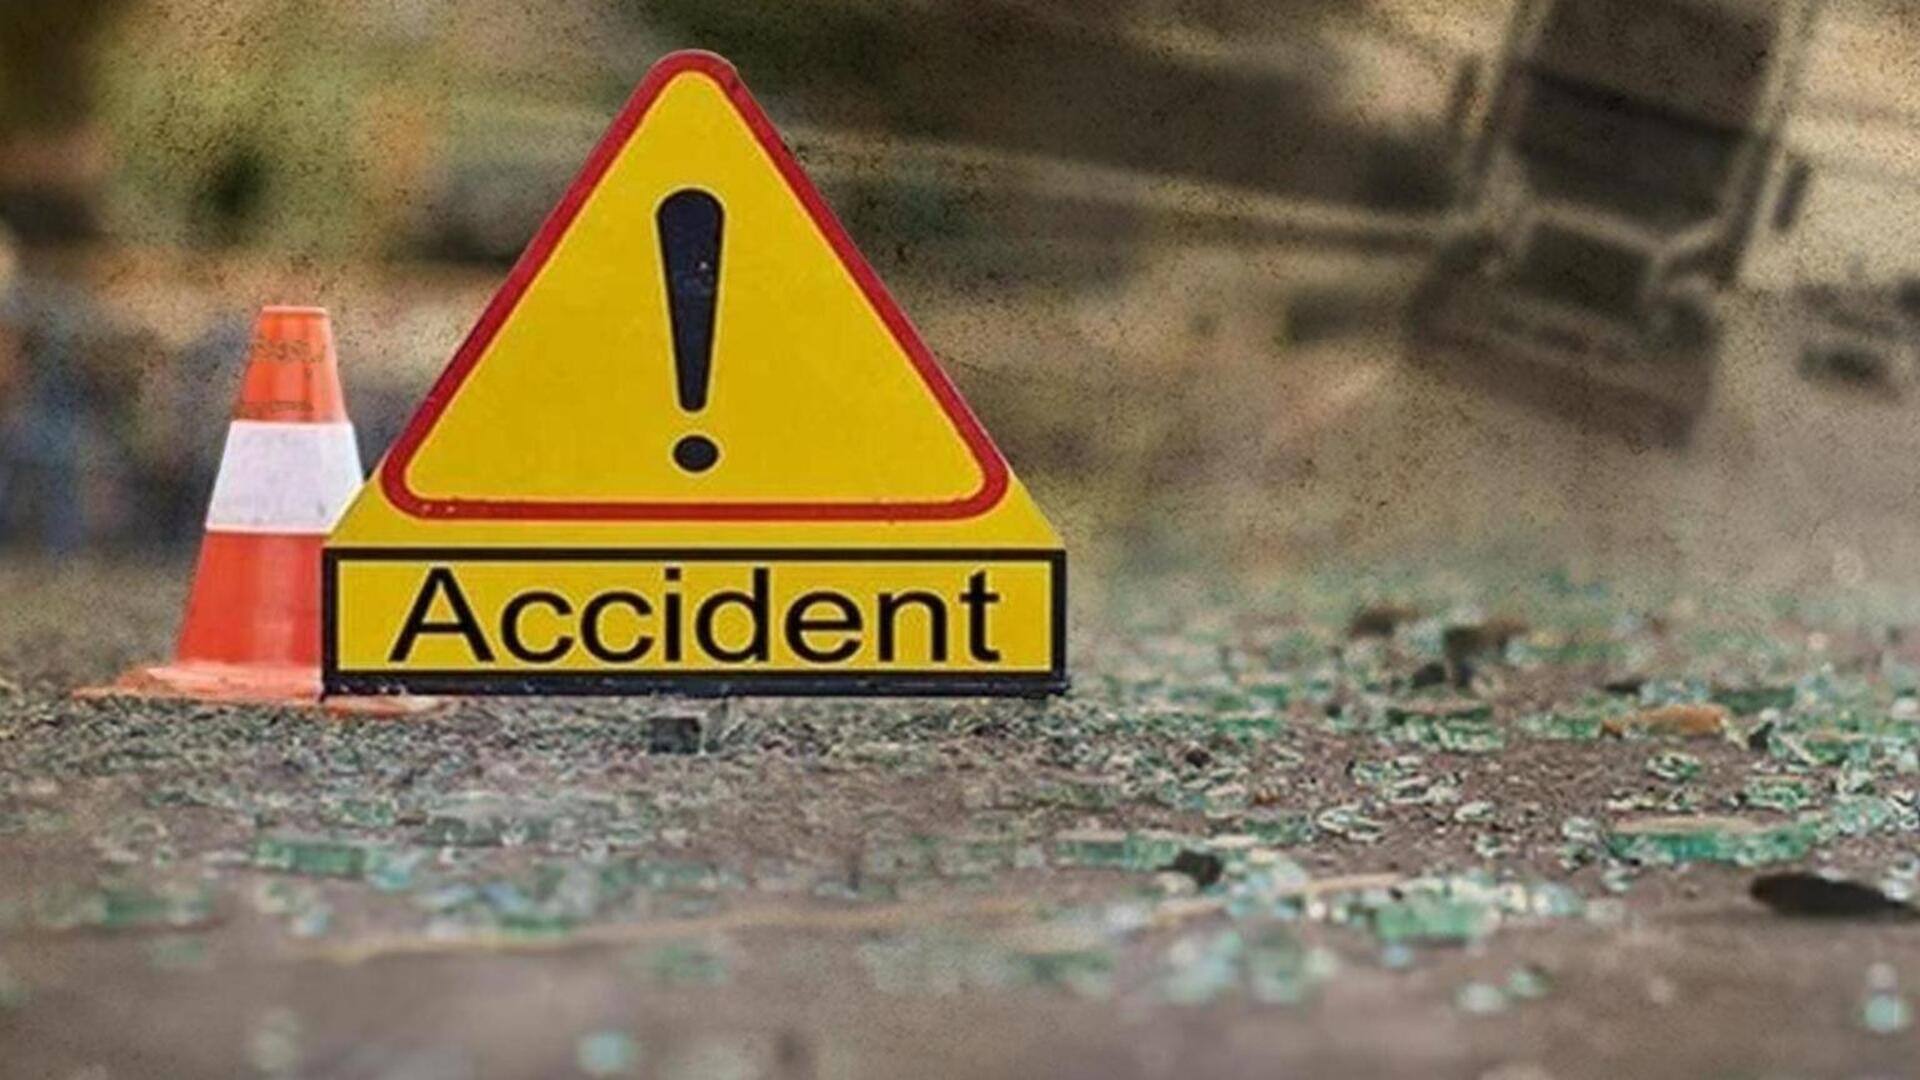 बिहार: बारात देखने के दौरान दूल्हे की कार से कुचलकर 2 महिलाओं की मौत, 5 घायल